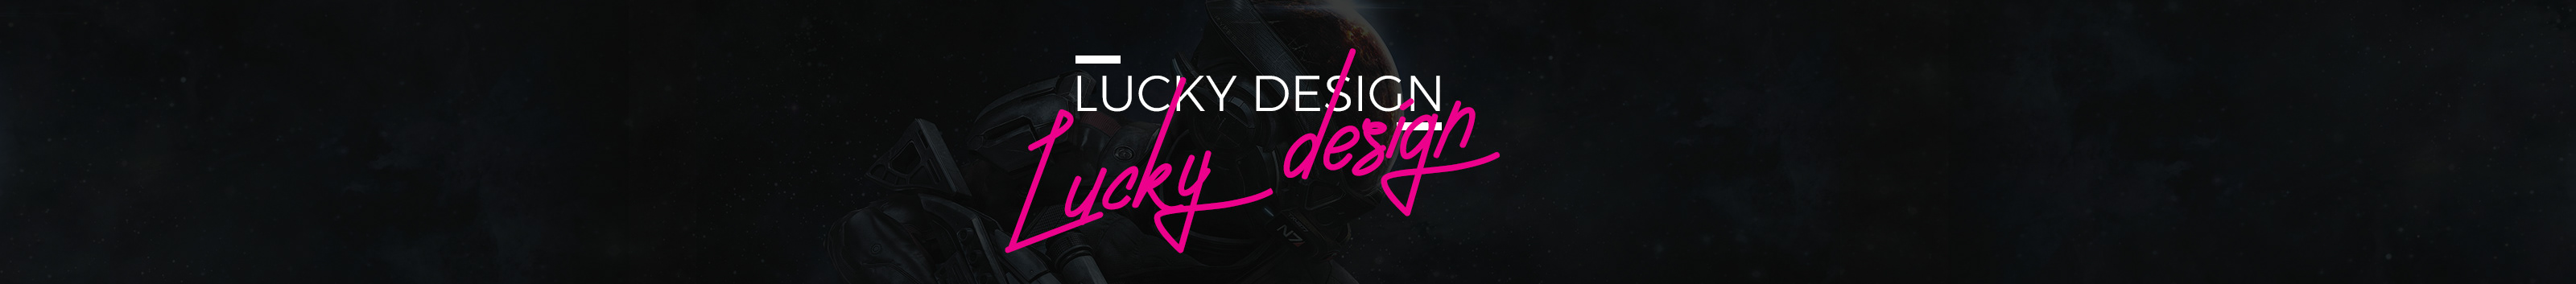 Lucky Design profil başlığı